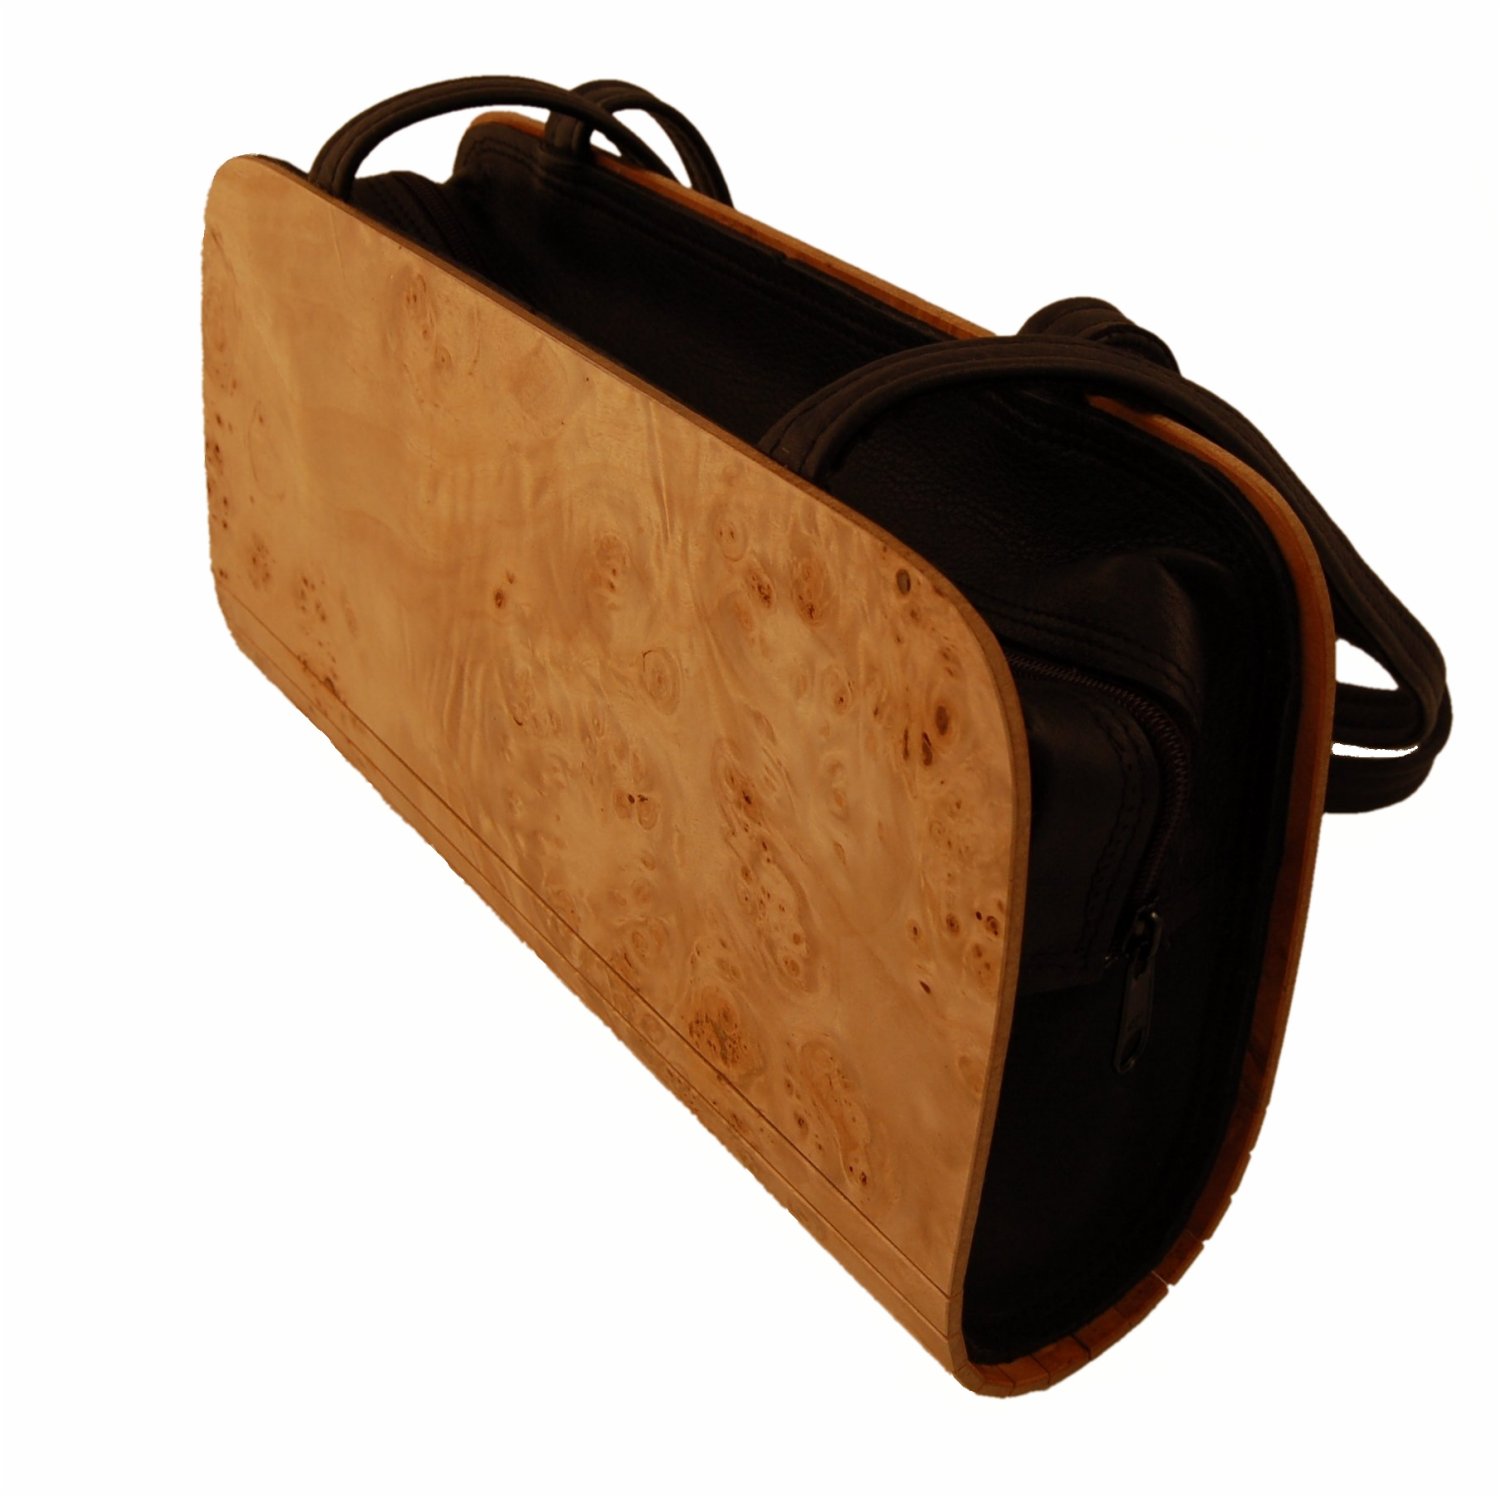 sac à main en bois de haute qualité, fabriqué en bois de peuplier